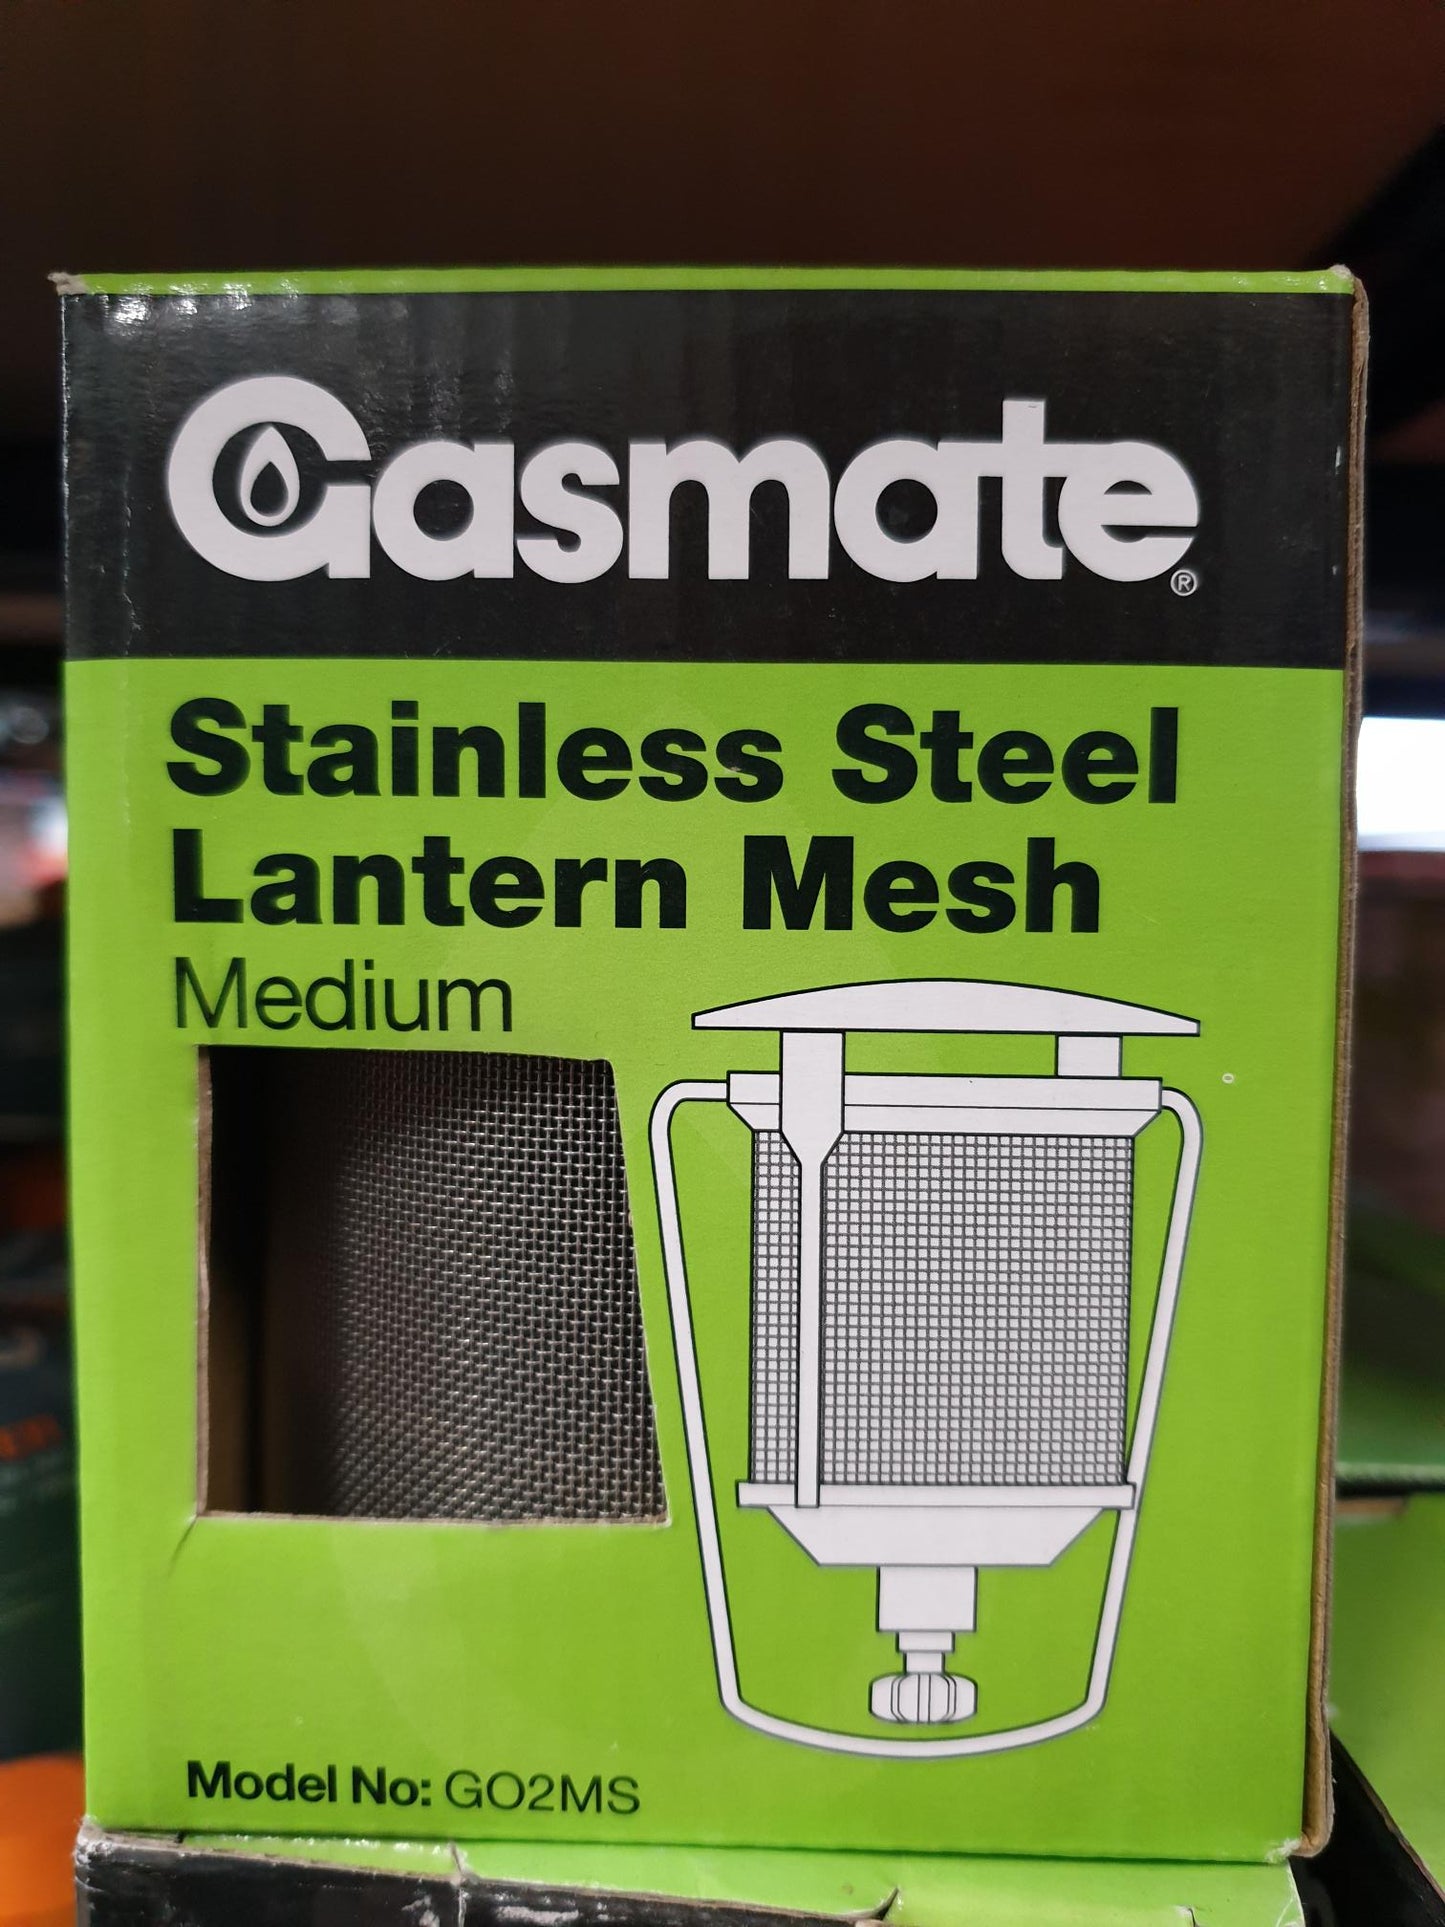 Gasmate Stainless Lantern Mesh Medium